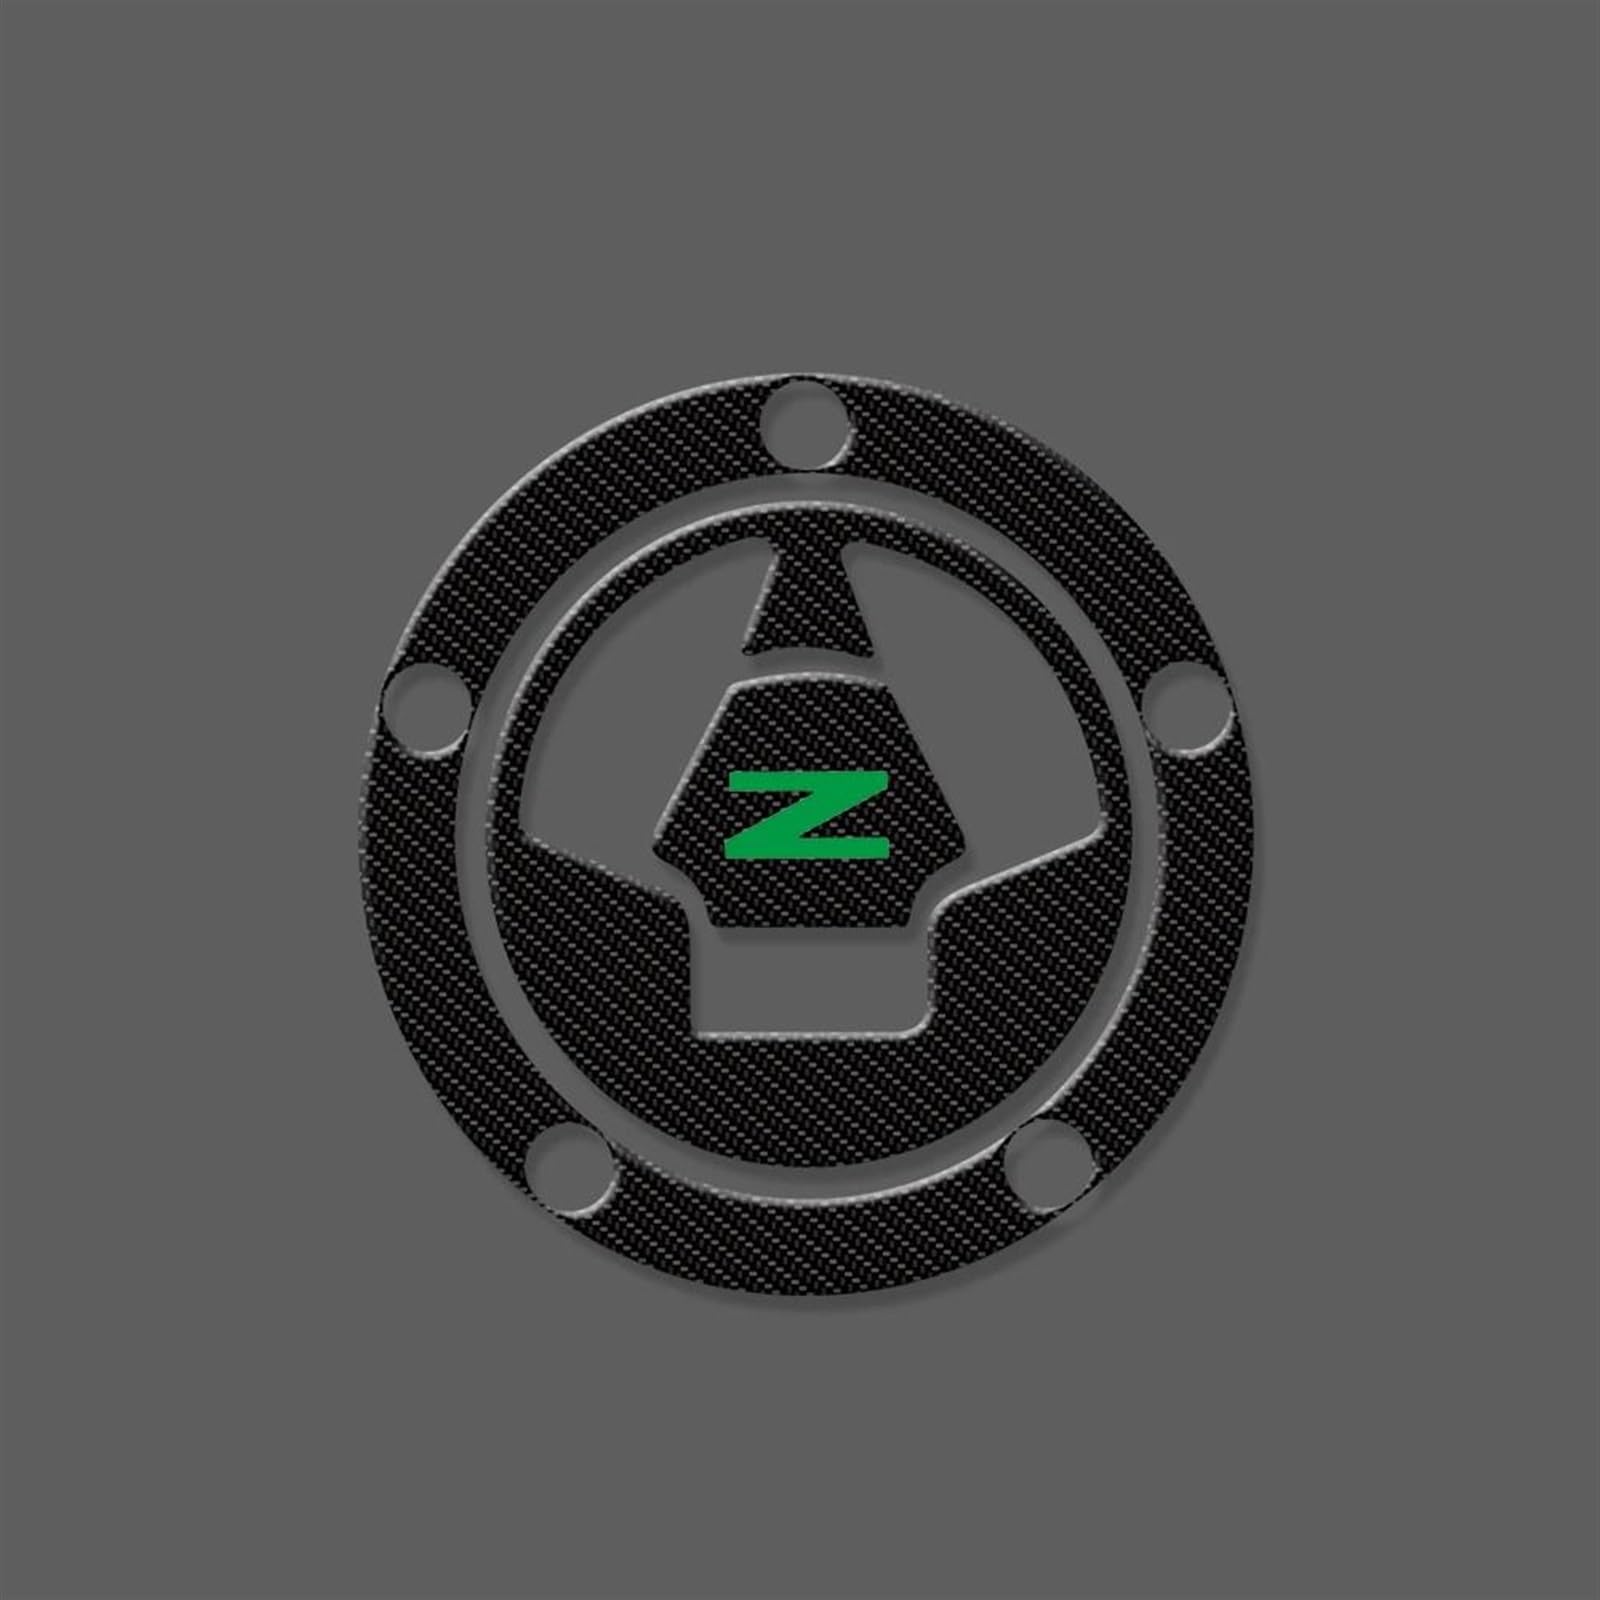 ZXYIWSDF Motorrad Tank Aufkleber Für Kawasaki Für Z750 Z800 Z1000 Z1000sx Motorrad Tank Pad Schutz Aufkleber Aufkleber Motorrad Heizöl Gas Tank Aufkleber(AAA1) von ZXYIWSDF